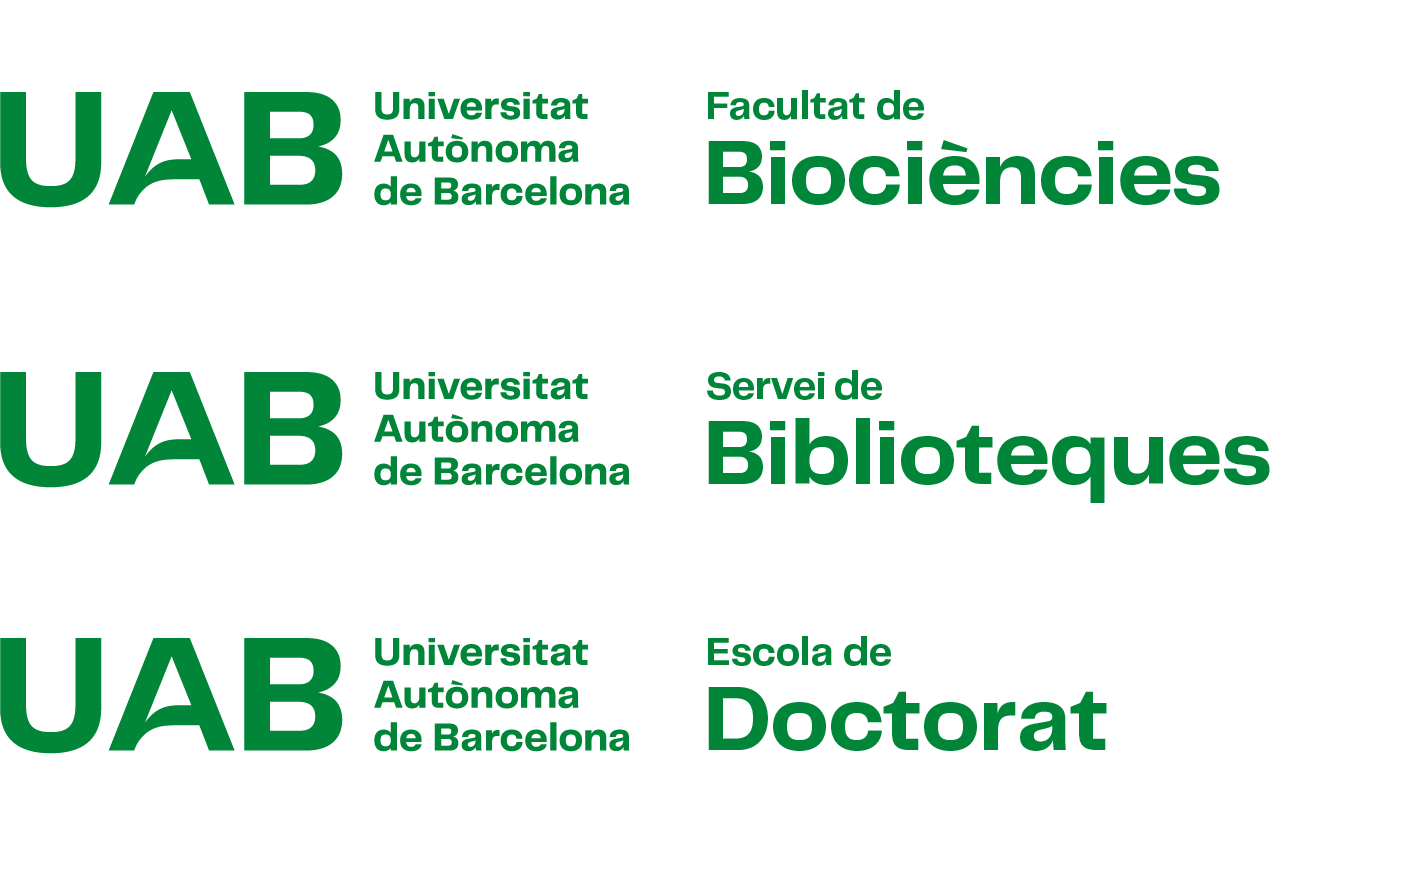 Exemples de construcció de la composició horitzontal amb versió 6 del logotip UAB